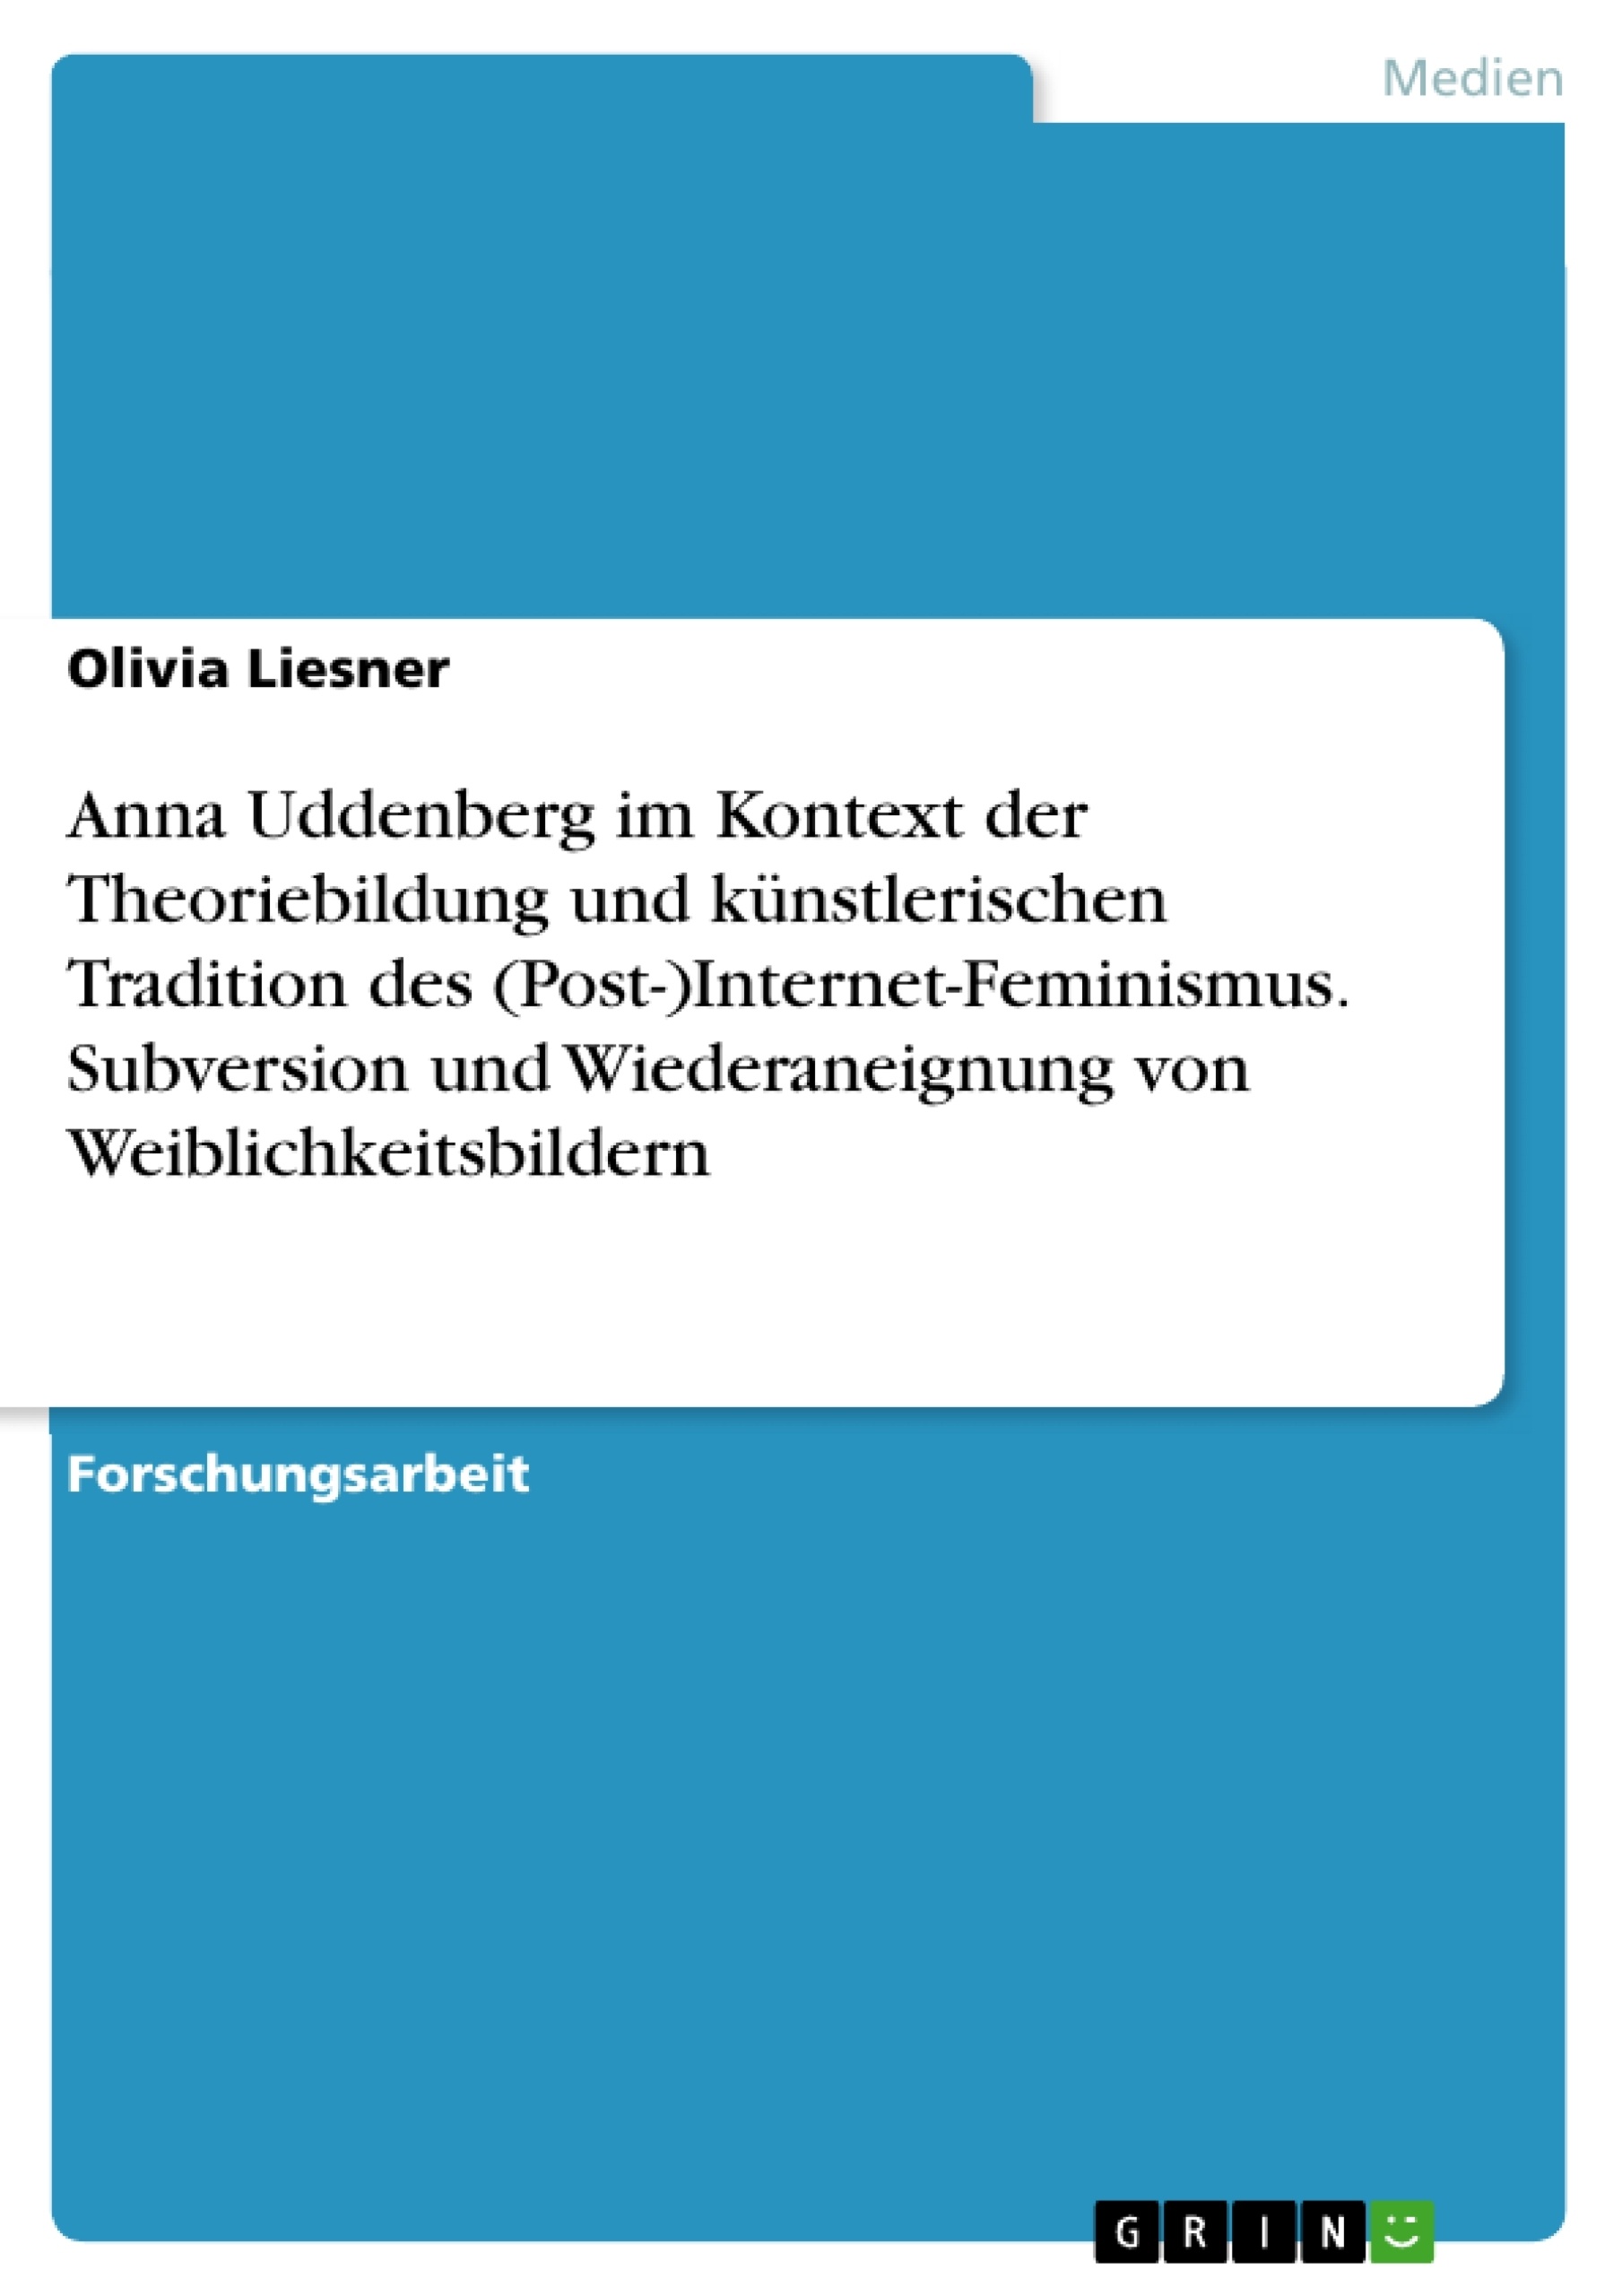 Title: Anna Uddenberg im Kontext der Theoriebildung und künstlerischen Tradition des (Post-)Internet-Feminismus. Subversion und Wiederaneignung von Weiblichkeitsbildern